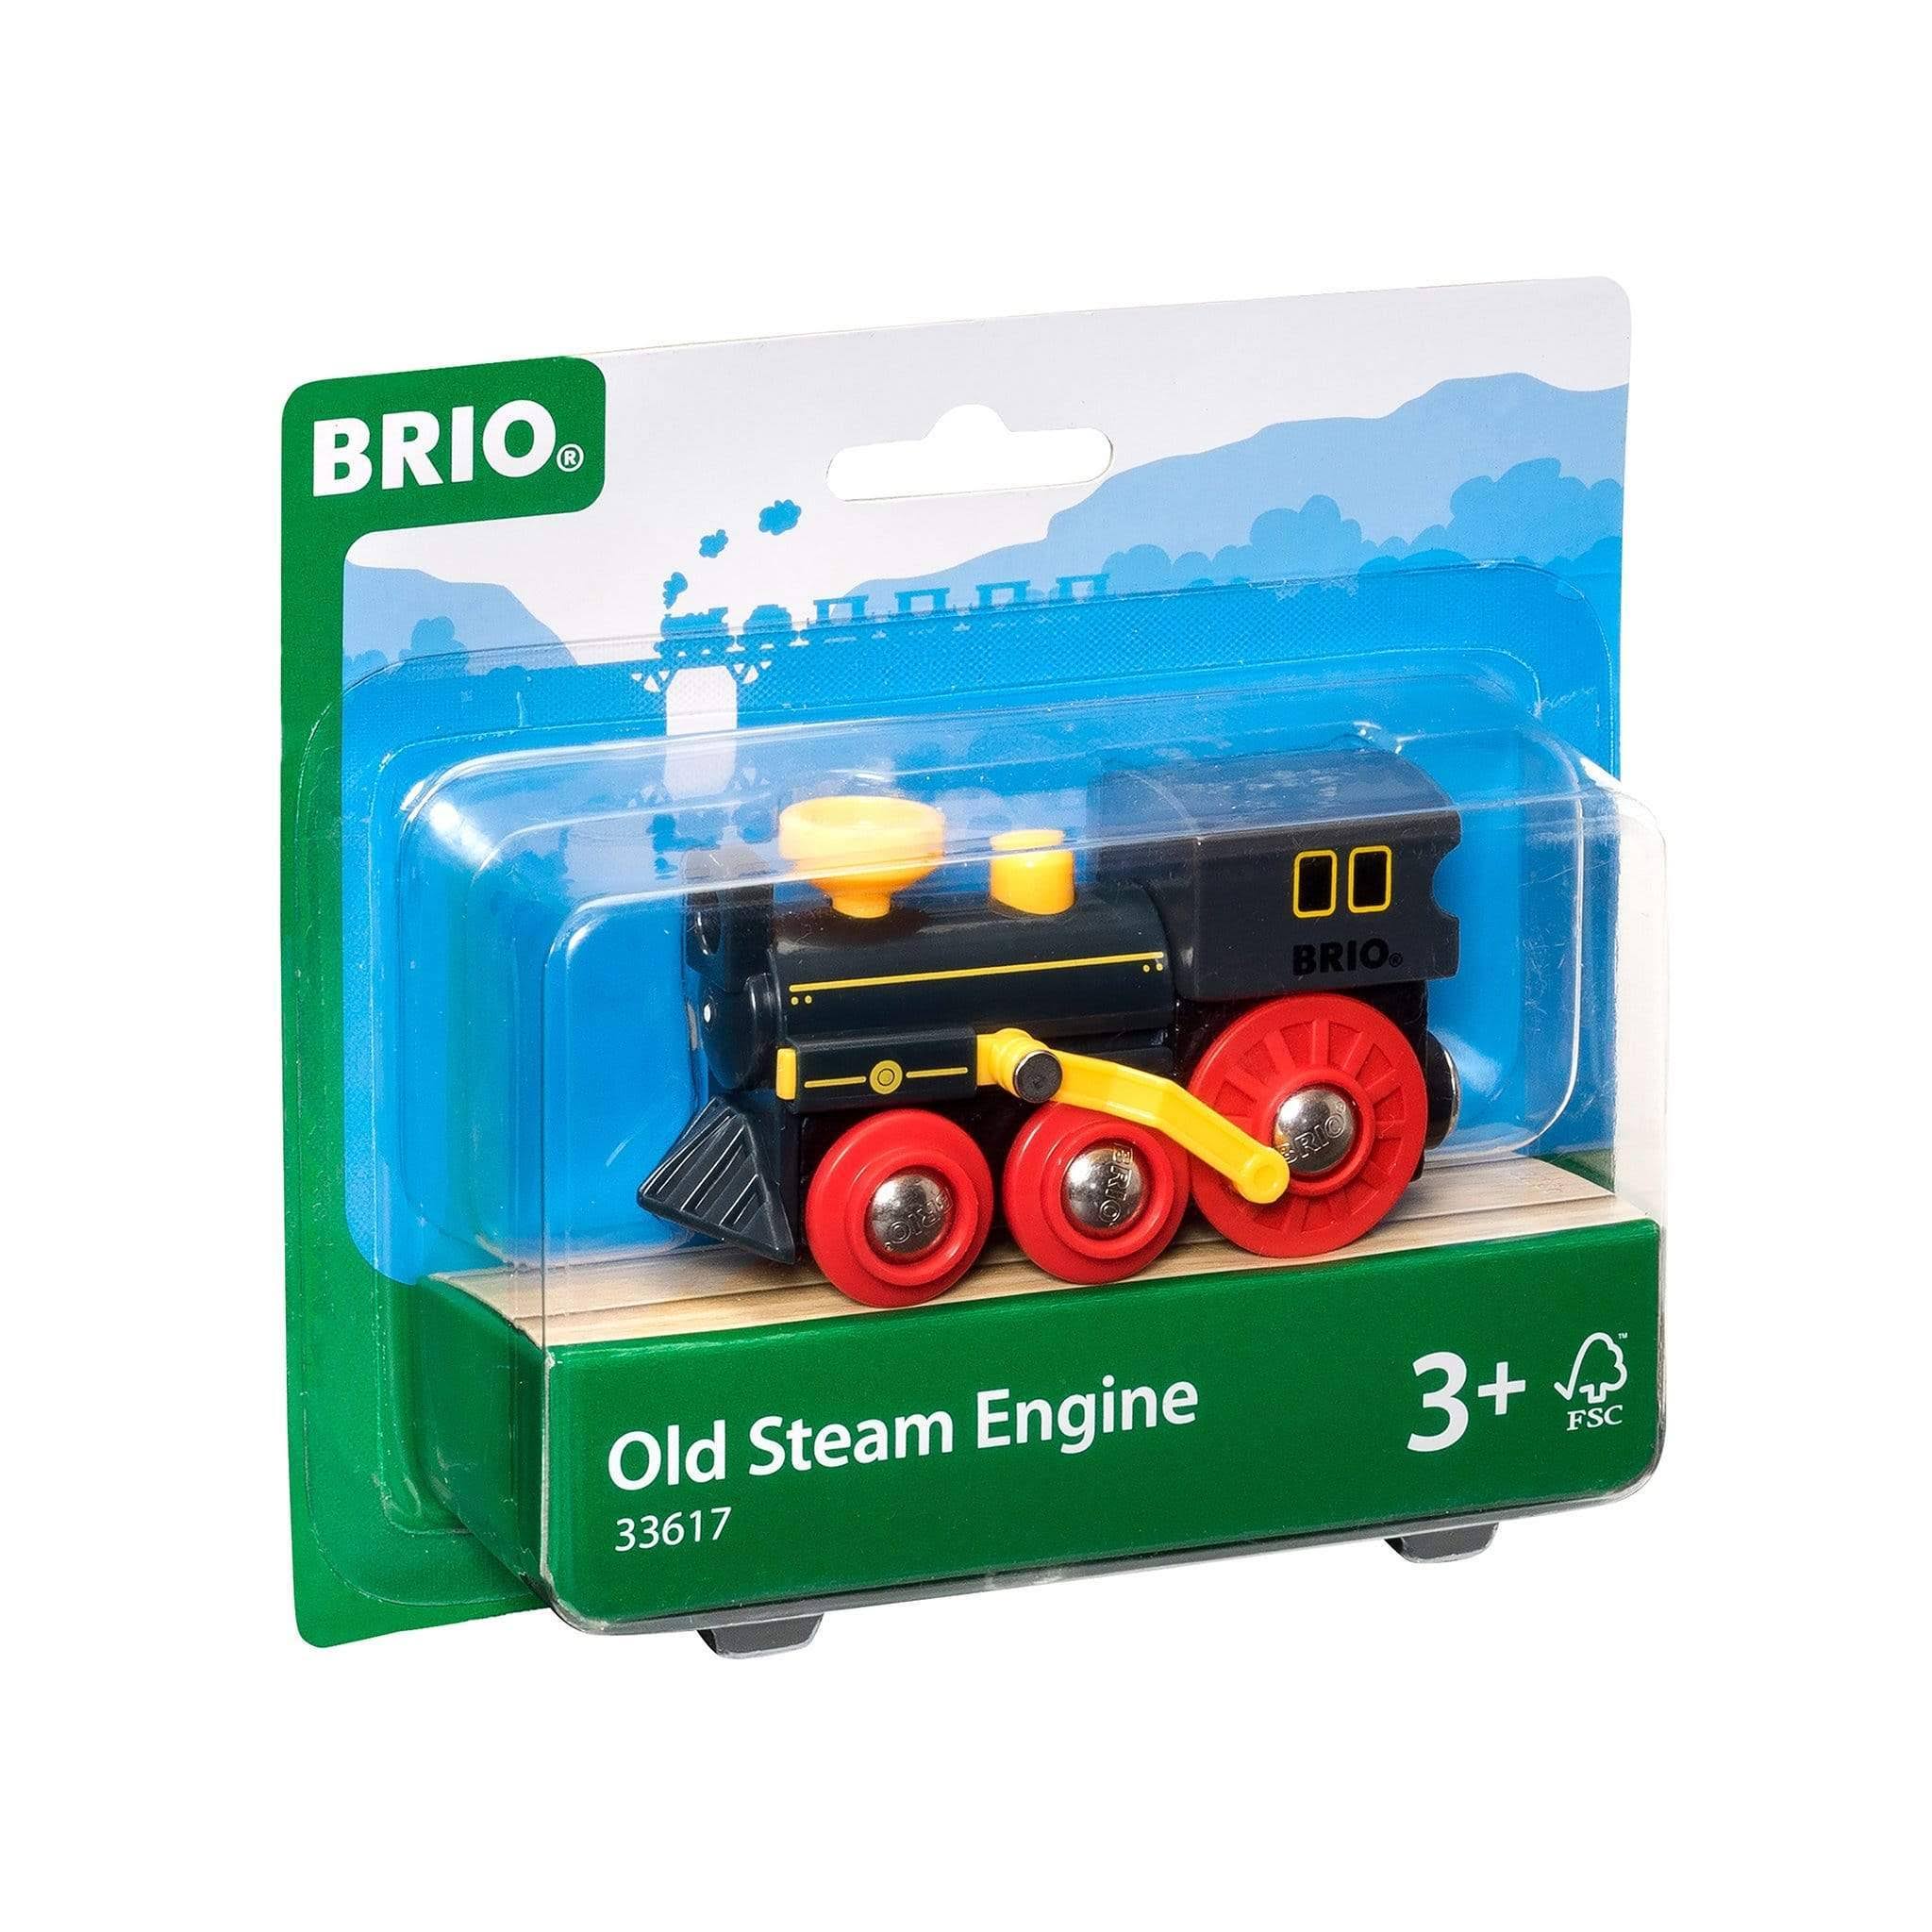 Brio Old Steam Engine Toy